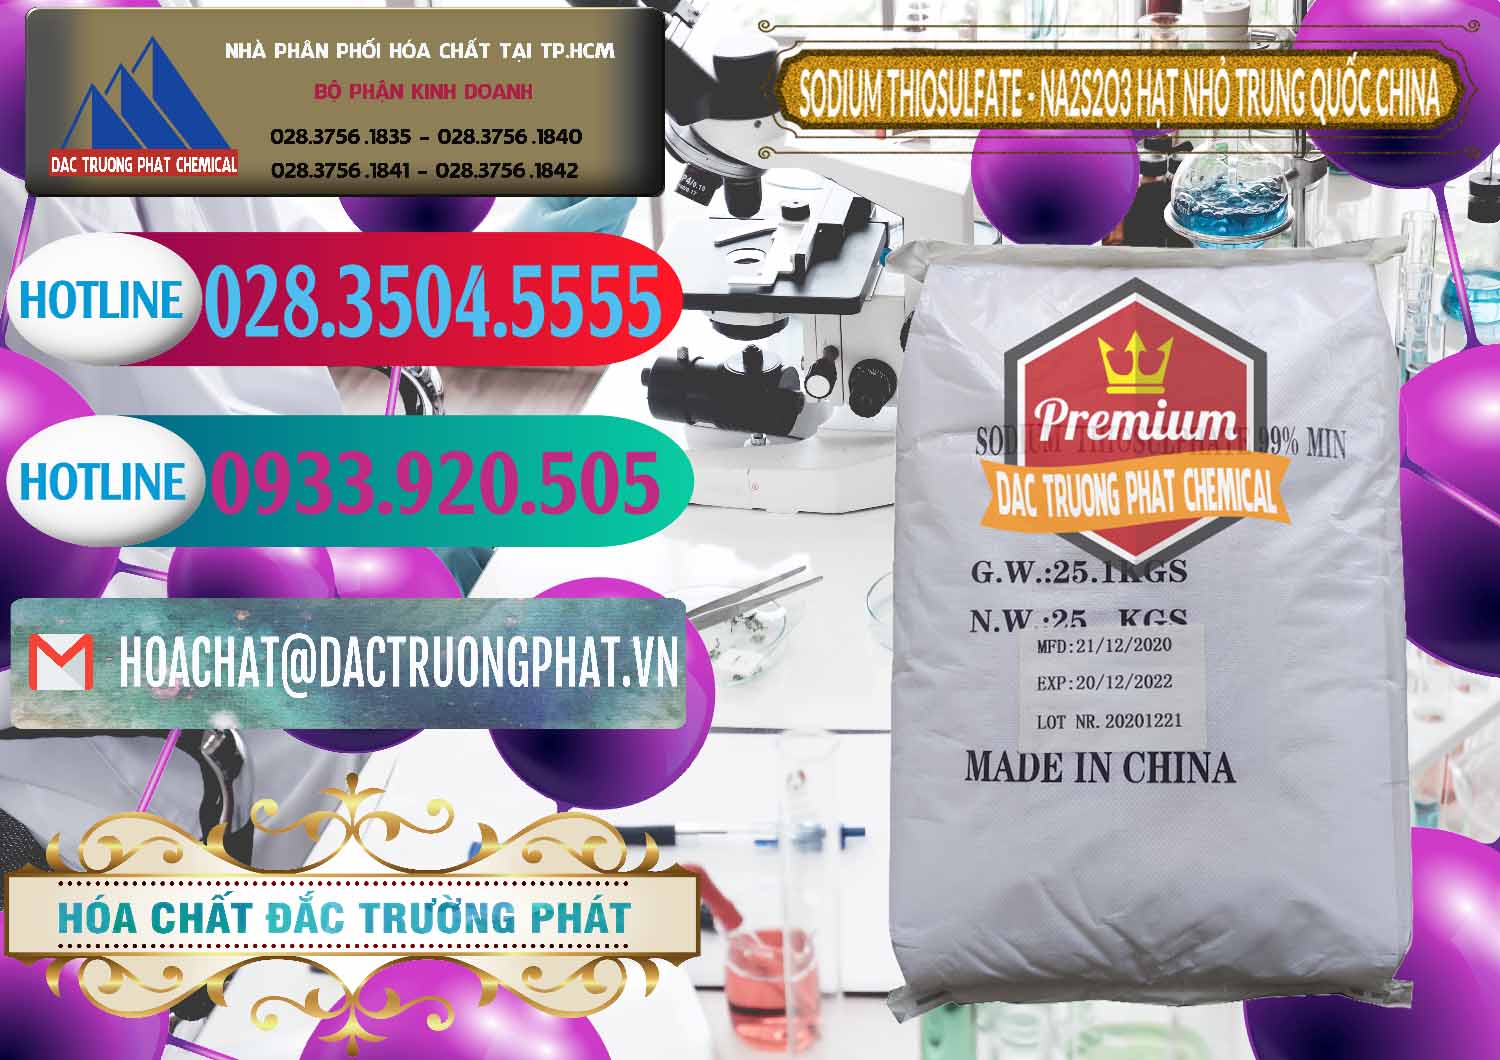 Đơn vị cung cấp & bán Sodium Thiosulfate - NA2S2O3 Hạt Nhỏ Trung Quốc China - 0204 - Nhà cung cấp - phân phối hóa chất tại TP.HCM - truongphat.vn